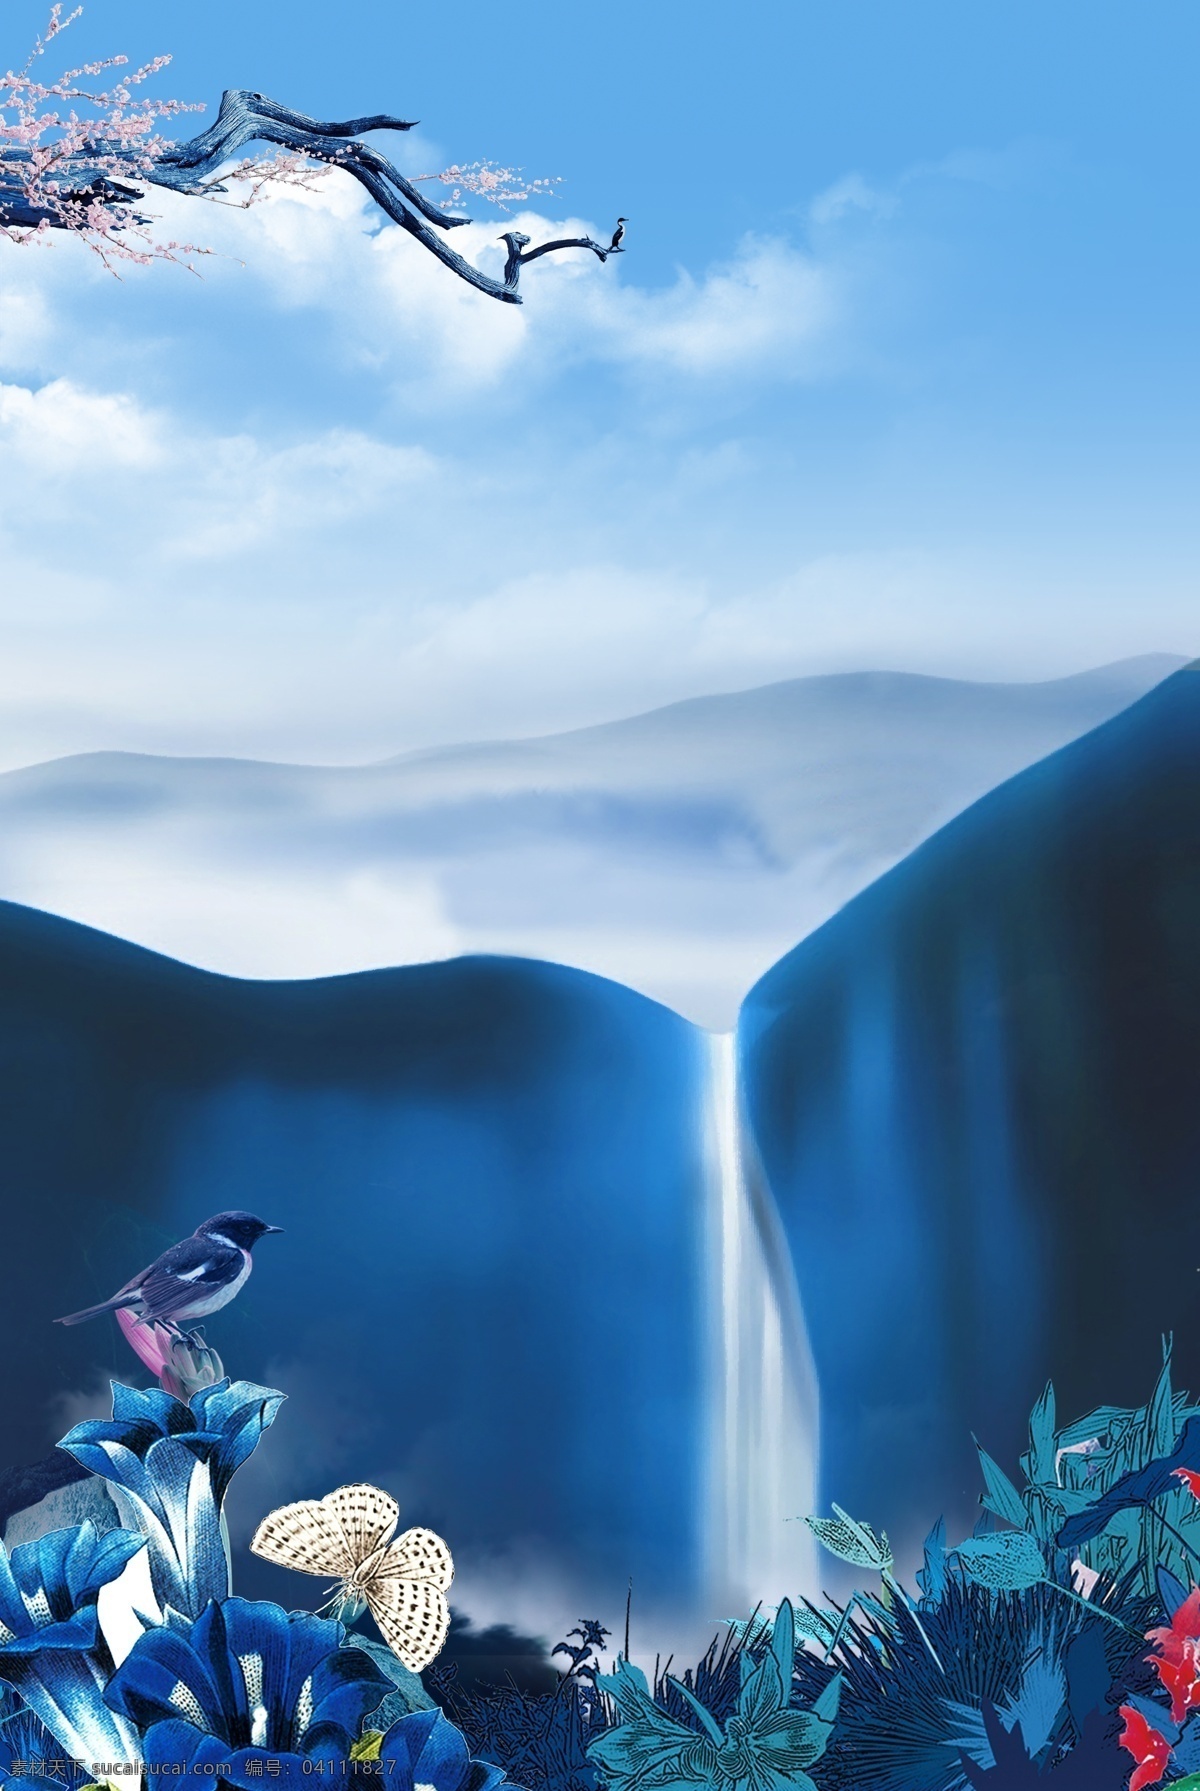 蓝色 唯美 手绘 山水 瀑布 背景 蓝色背景 树木 小鸟 新中式 蓝天 花卉 回归自然